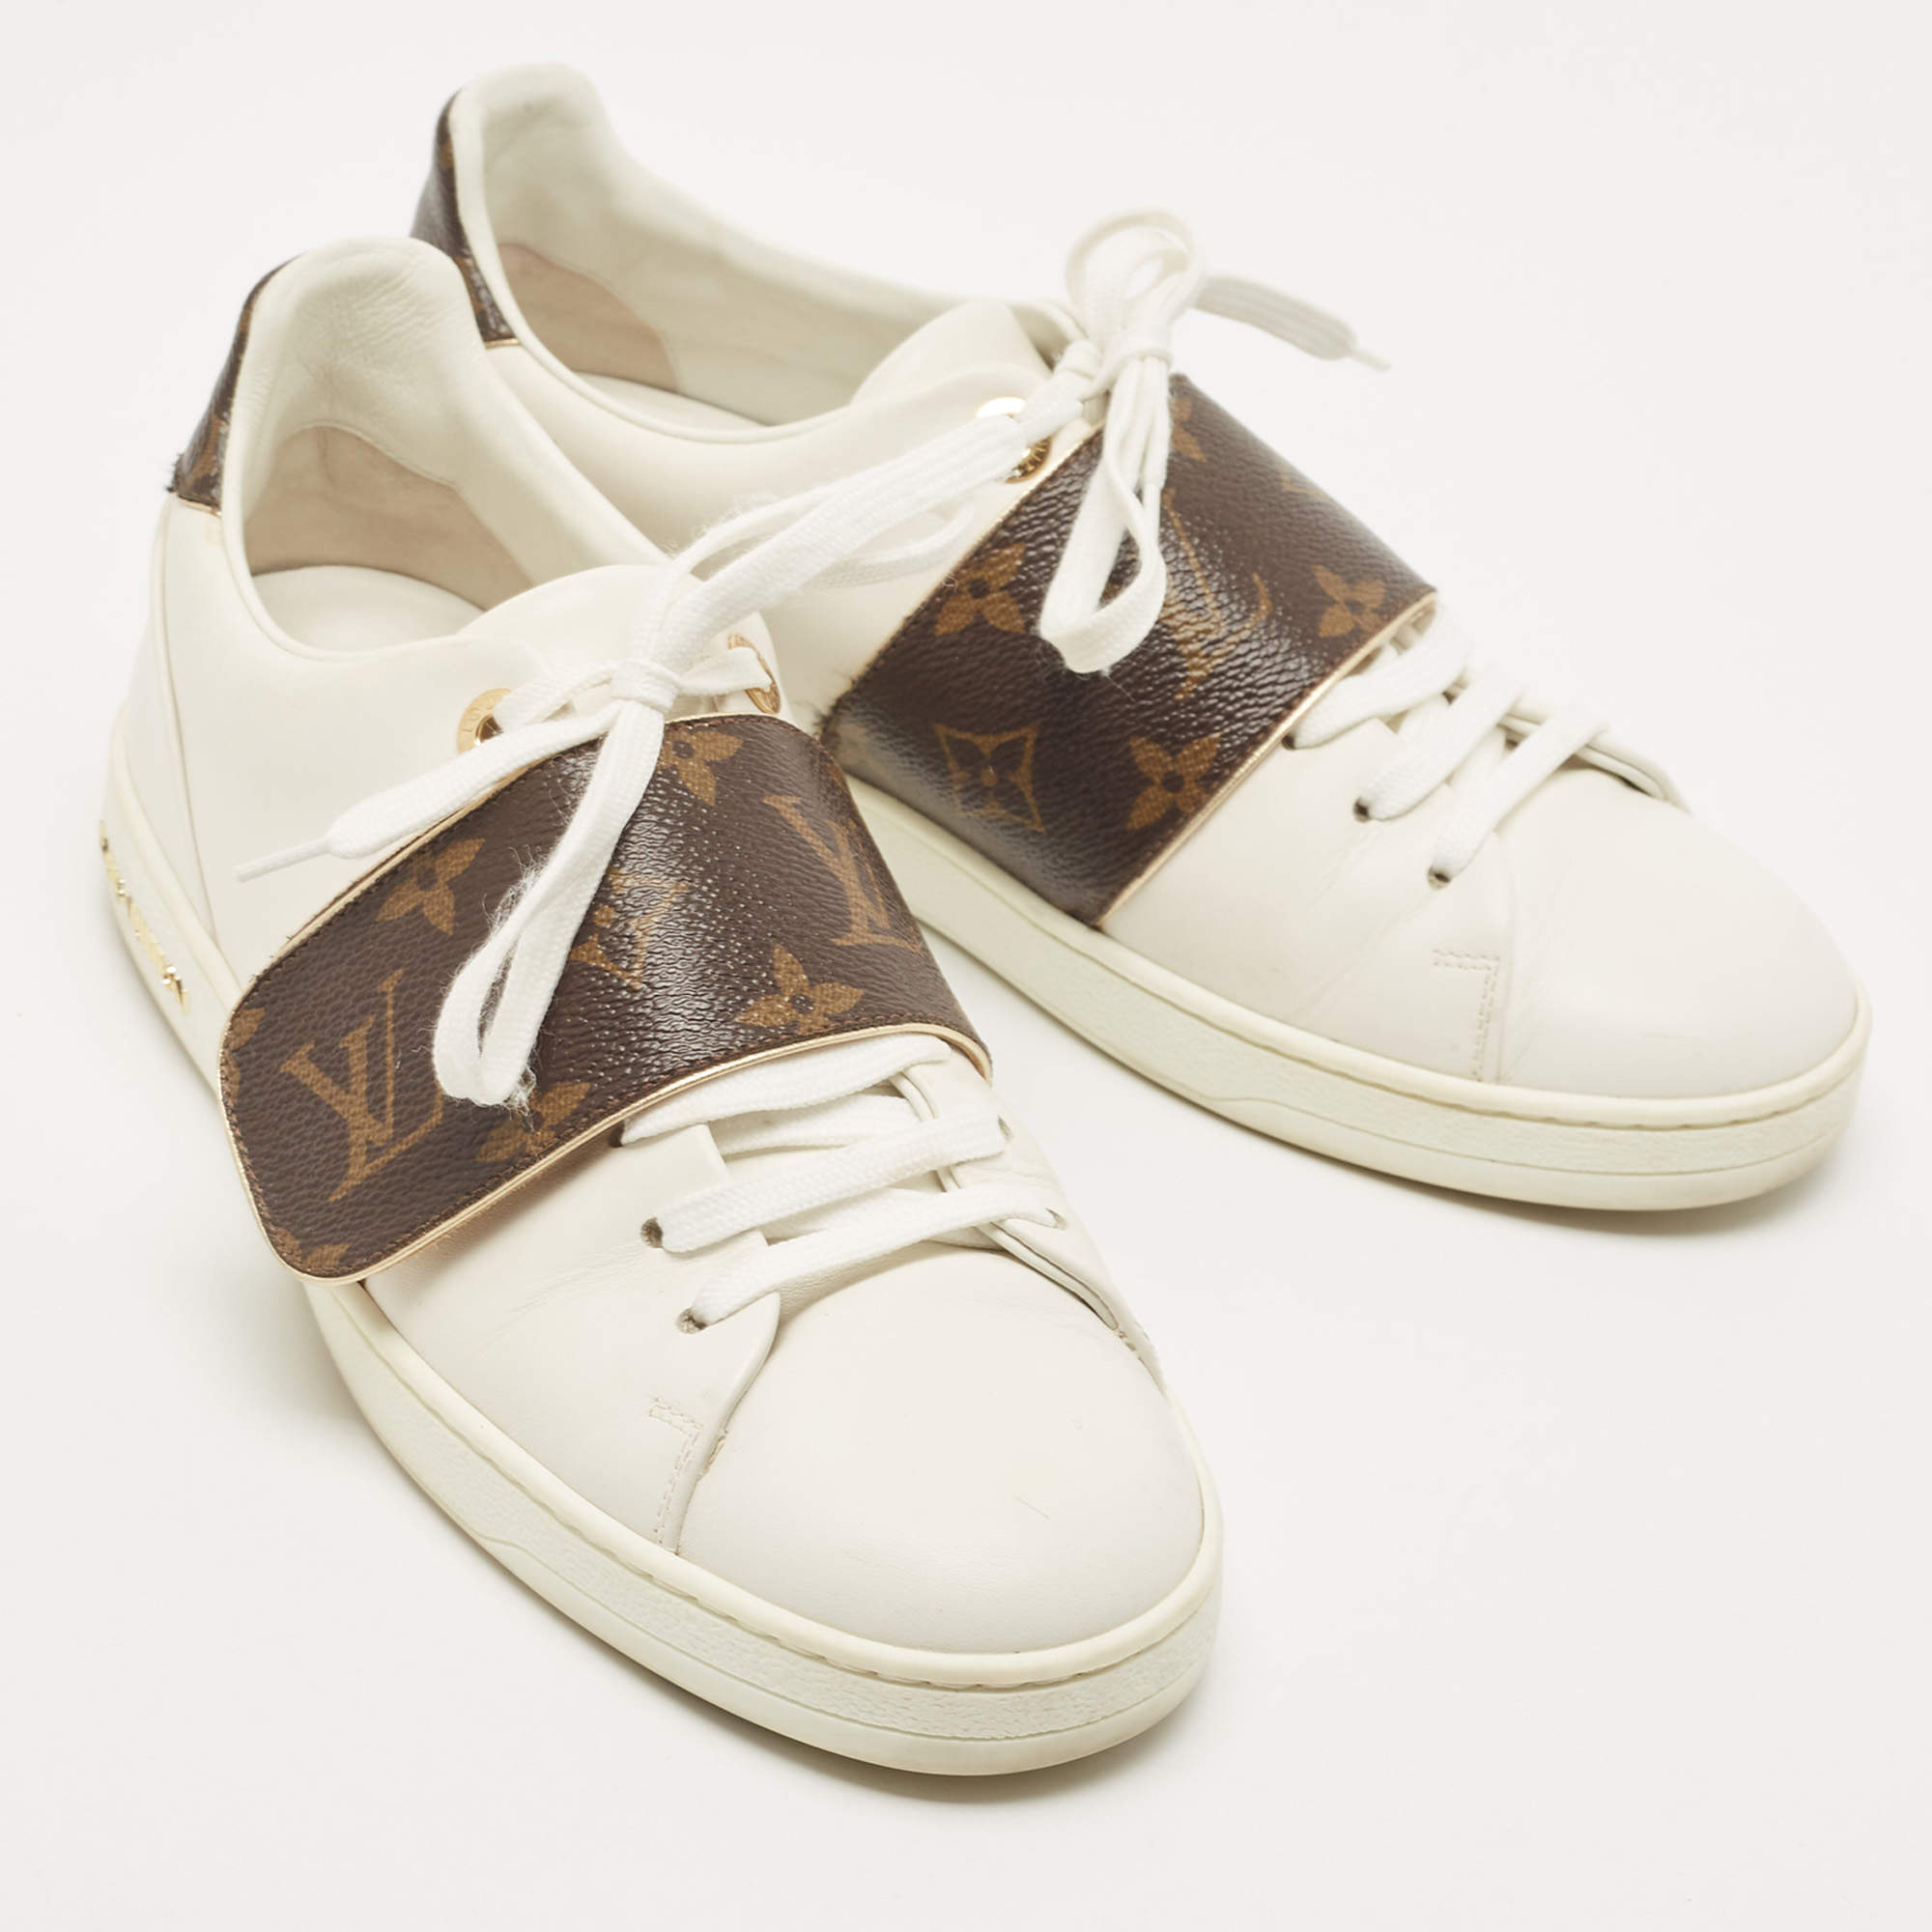 LOUIS VUITTON Frontrow Sneaker White. Size 36.5